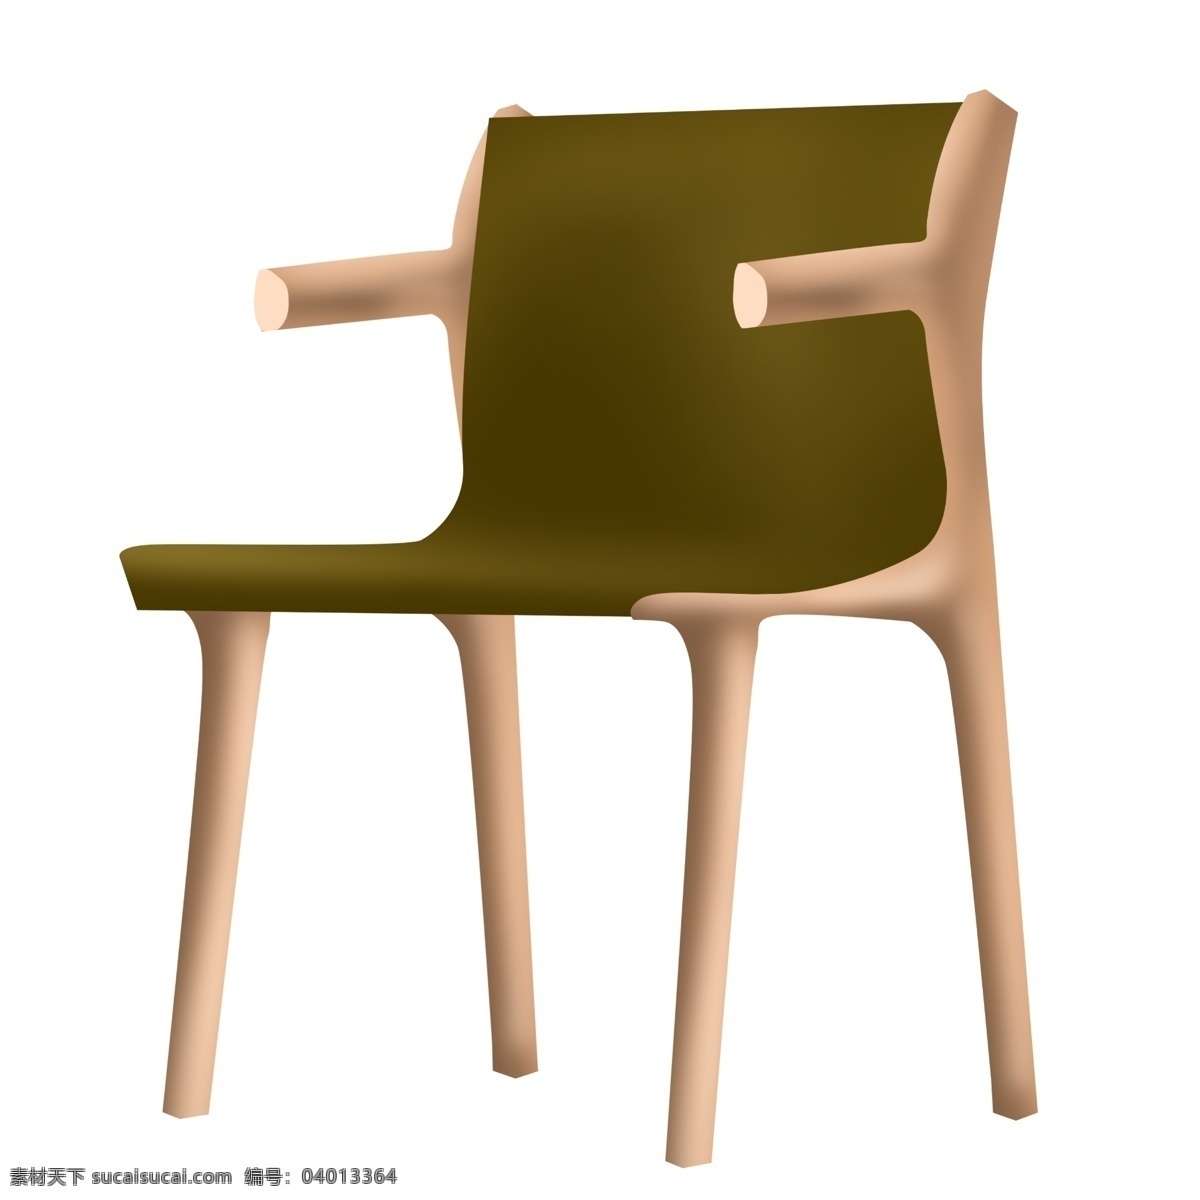 一把 木质 椅子 插画 木质椅子 木椅子 木头 实木椅子 一把椅子 原木色椅子 木质椅子插图